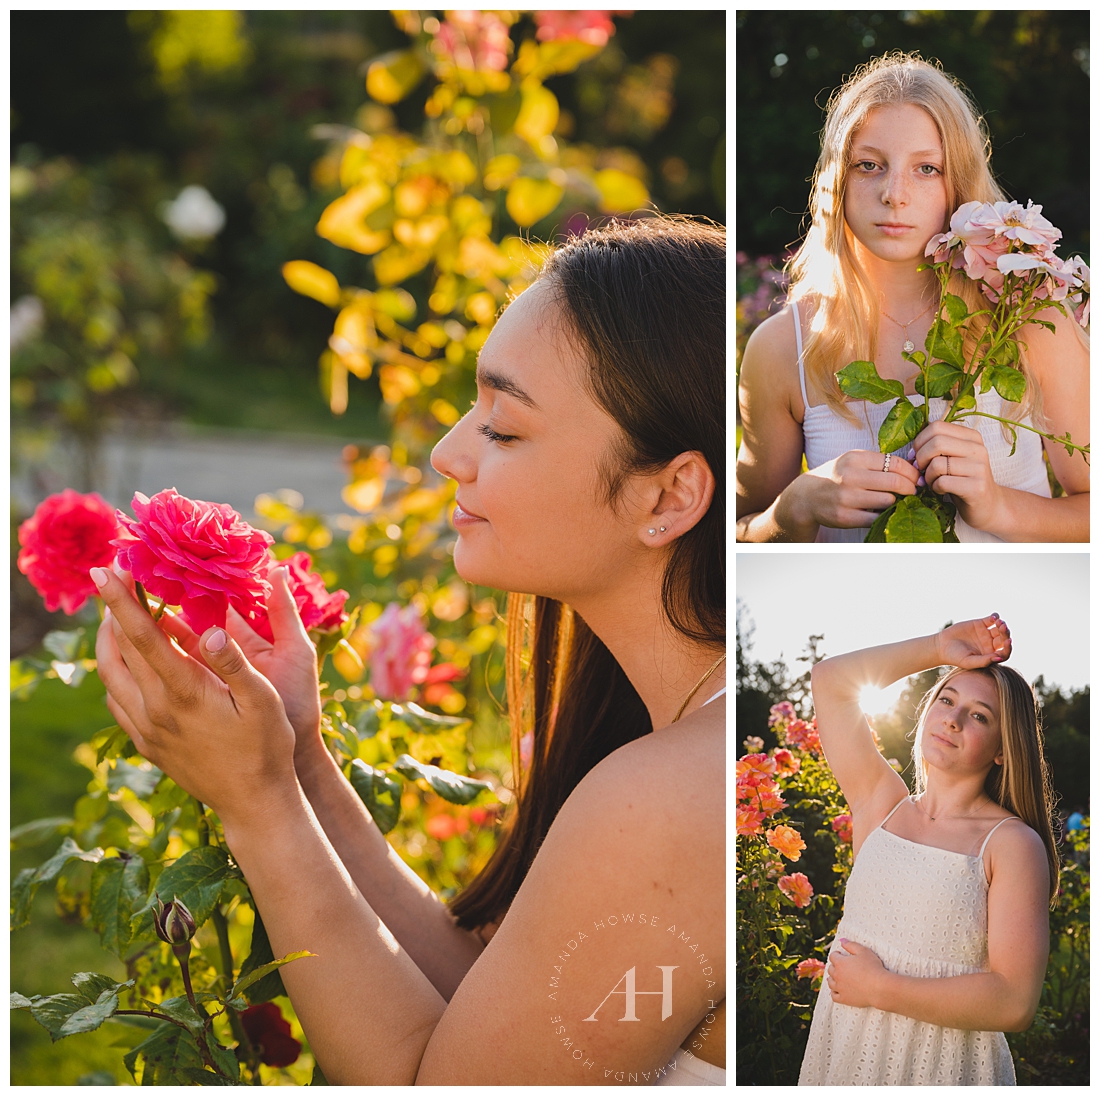 Sunny Senior Portraits in PNW Rose Gardens | Photographed by the Best Tacoma, Washington Senior Photographer Amanda Howse Photography